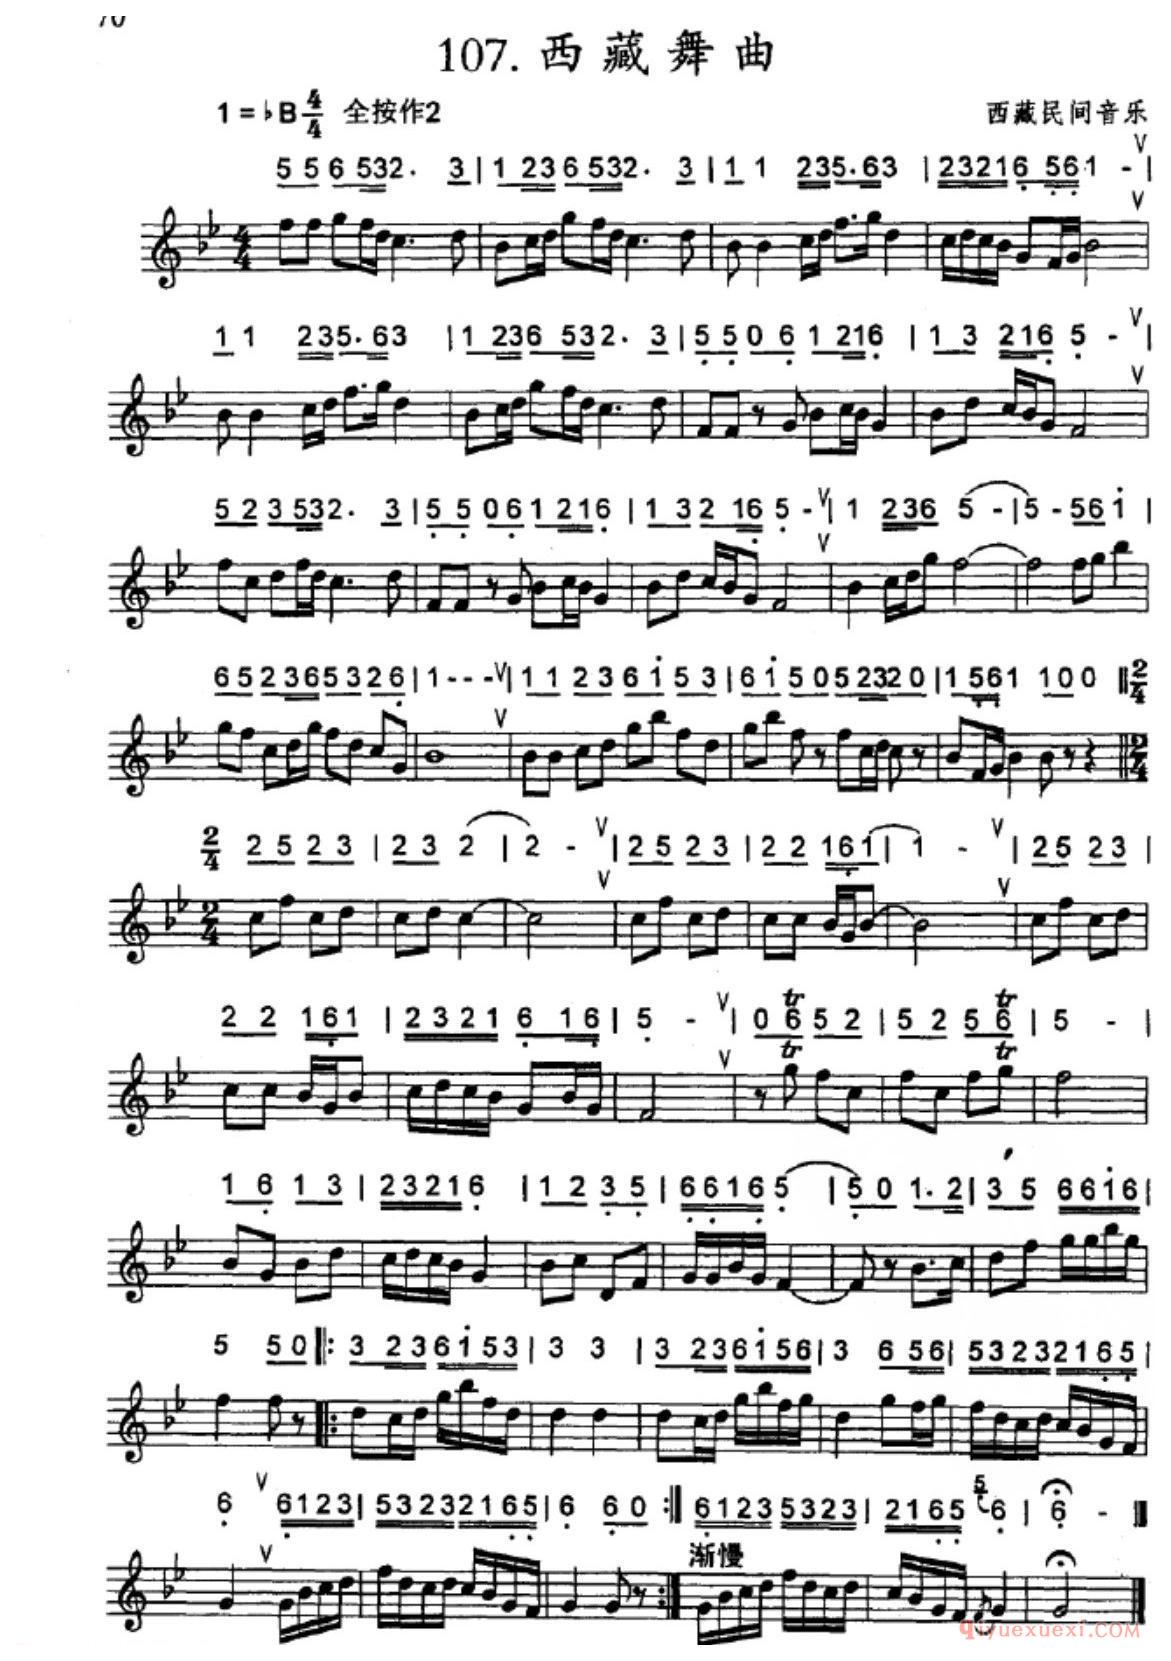 竖笛练习曲_西藏舞曲_五线谱与简谱对照